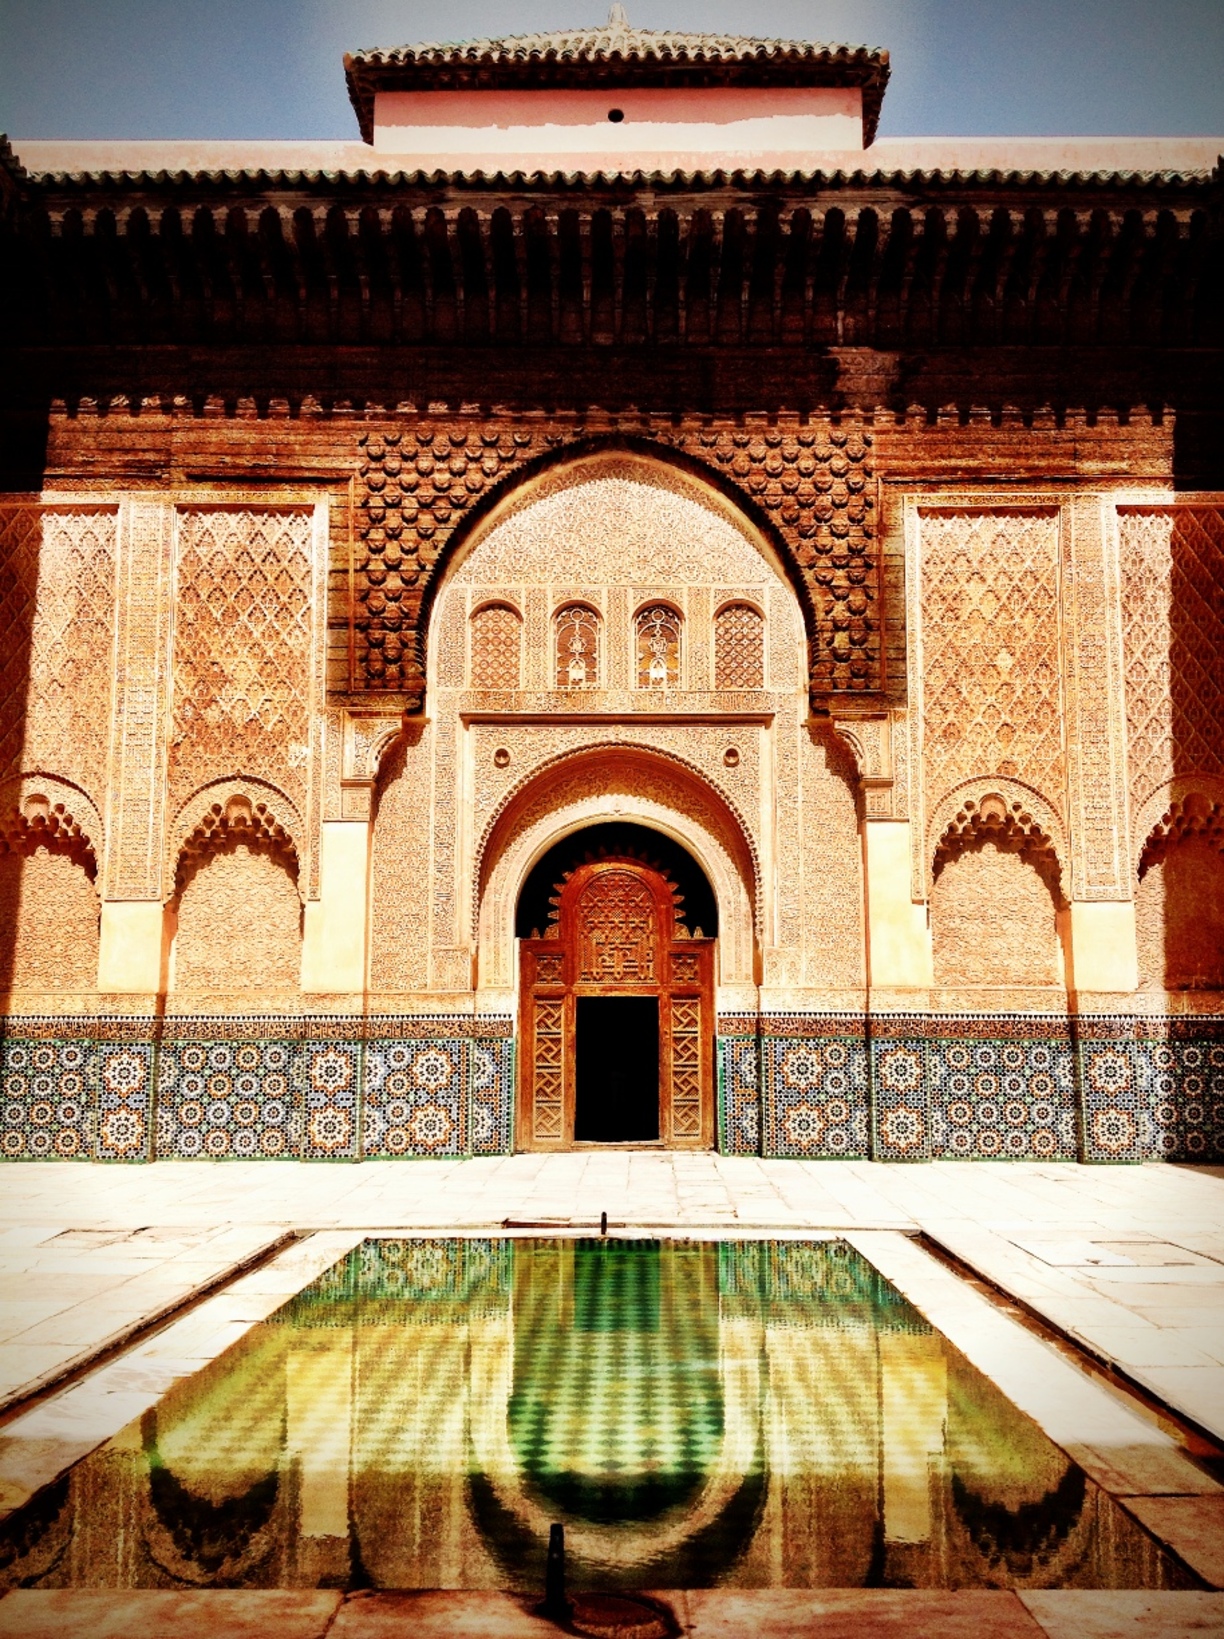 Madrassa-Ben-Youssef marrakech